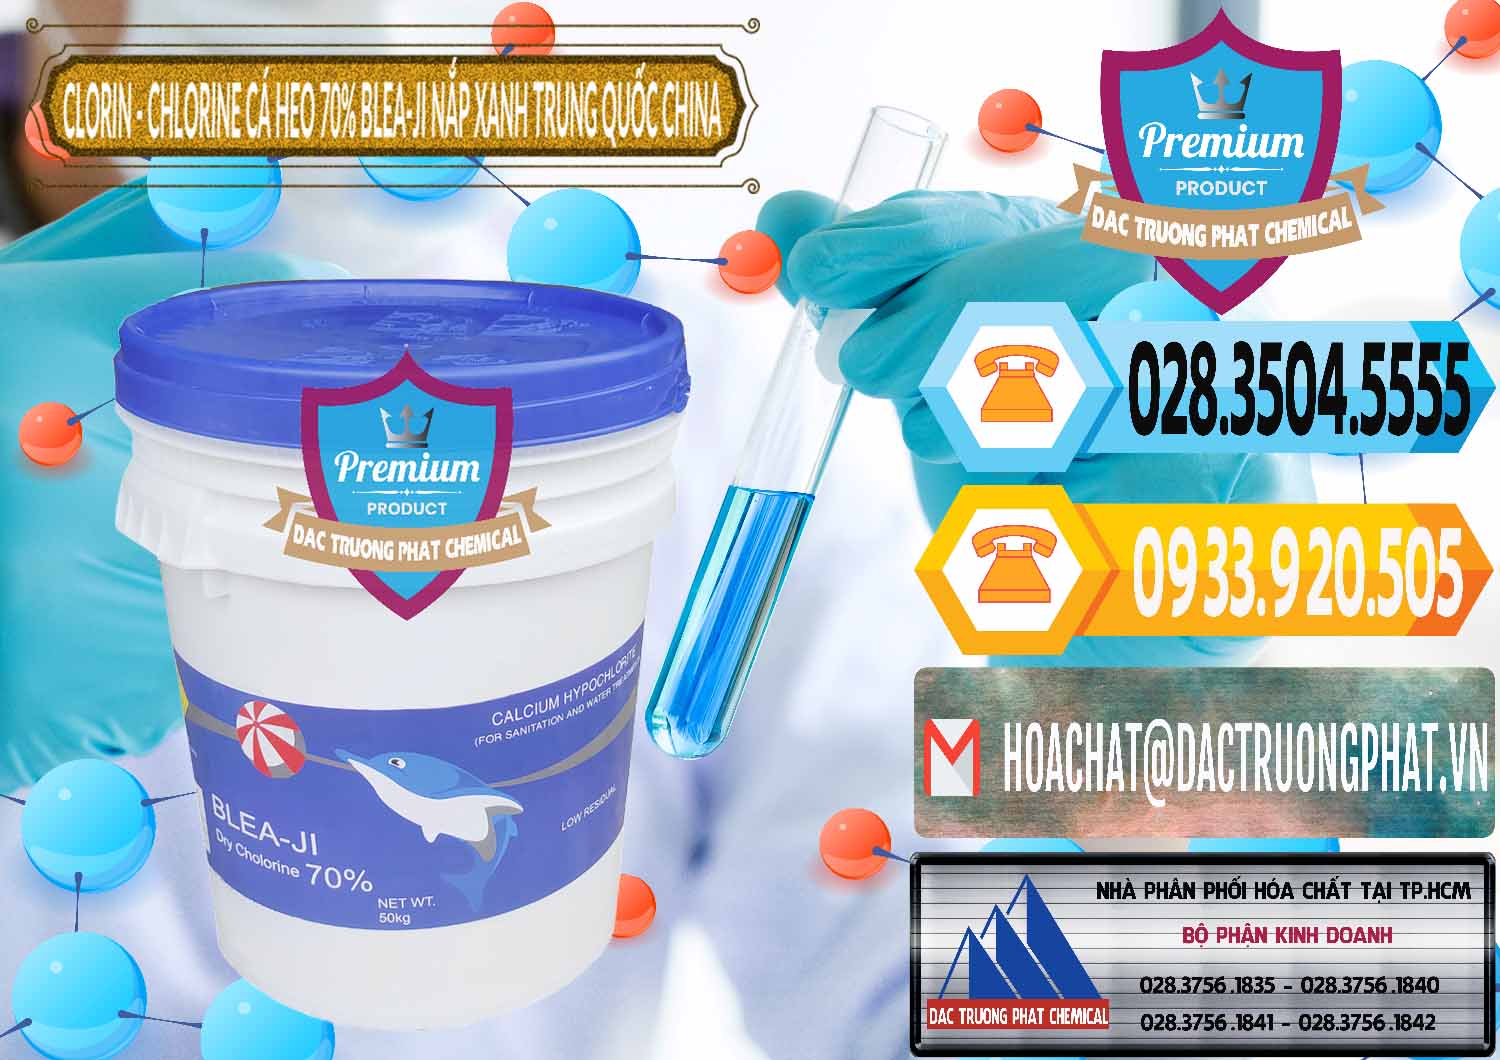 Công ty kinh doanh và bán Clorin - Chlorine Cá Heo 70% Cá Heo Blea-Ji Thùng Tròn Nắp Xanh Trung Quốc China - 0208 - Nơi chuyên phân phối và cung ứng hóa chất tại TP.HCM - hoachattayrua.net